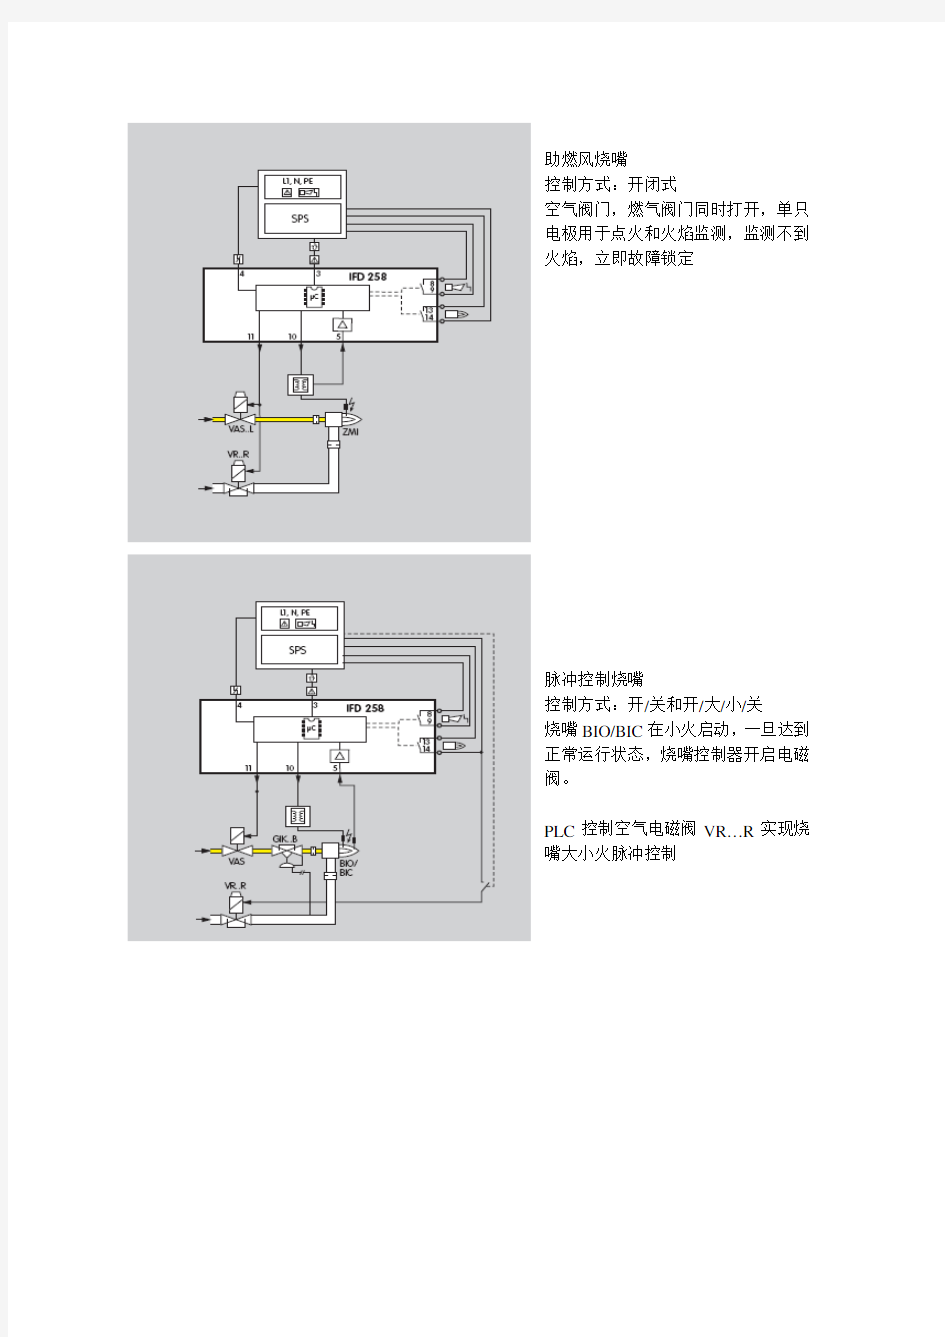 IFD 258烧嘴控制器中文说明书